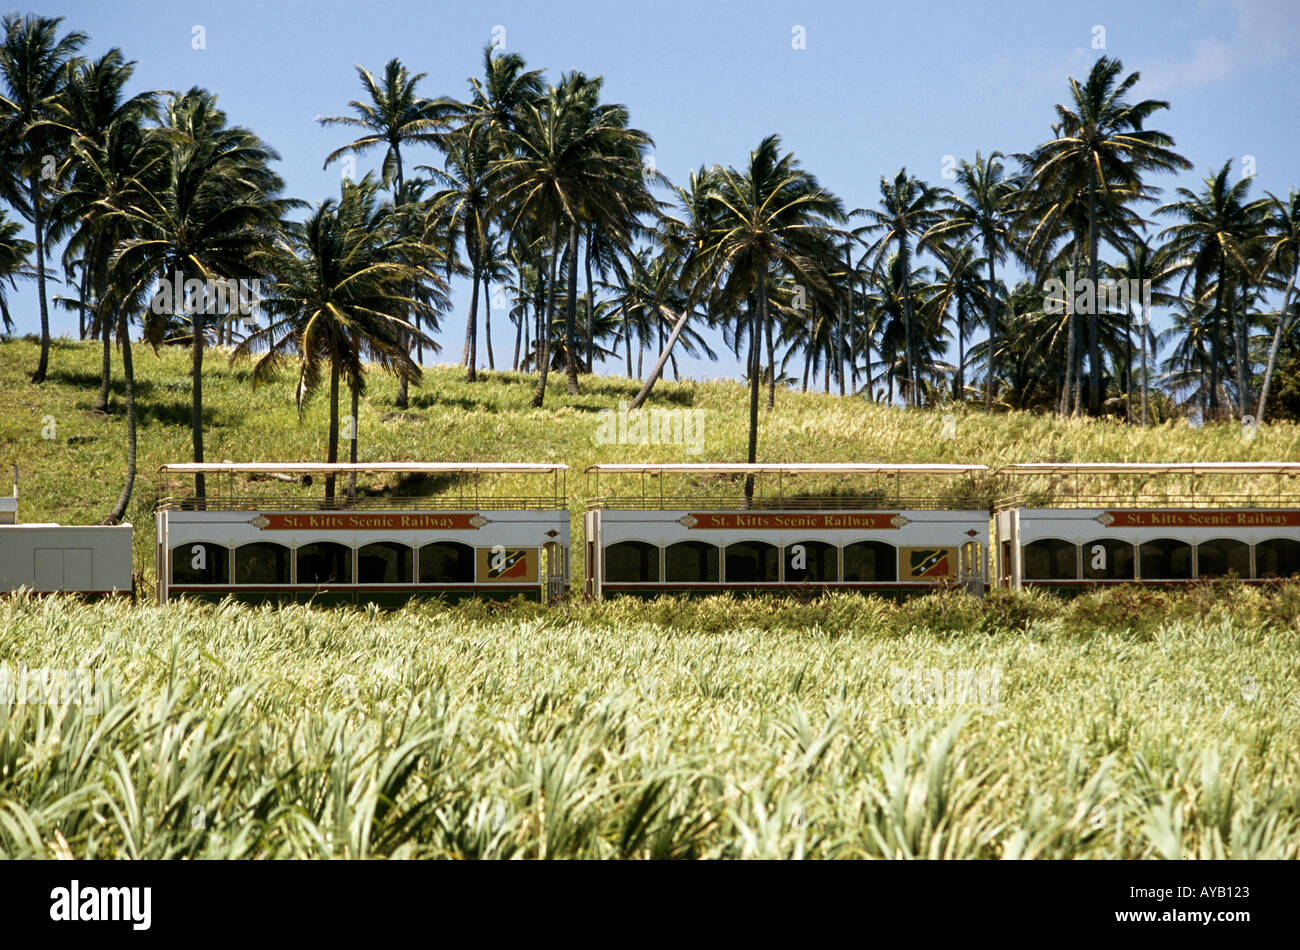 Saint Kitts Scenic Railway, die Besucher auf eine Reise durch die alte Zuckerrohrplantagen Stockfoto